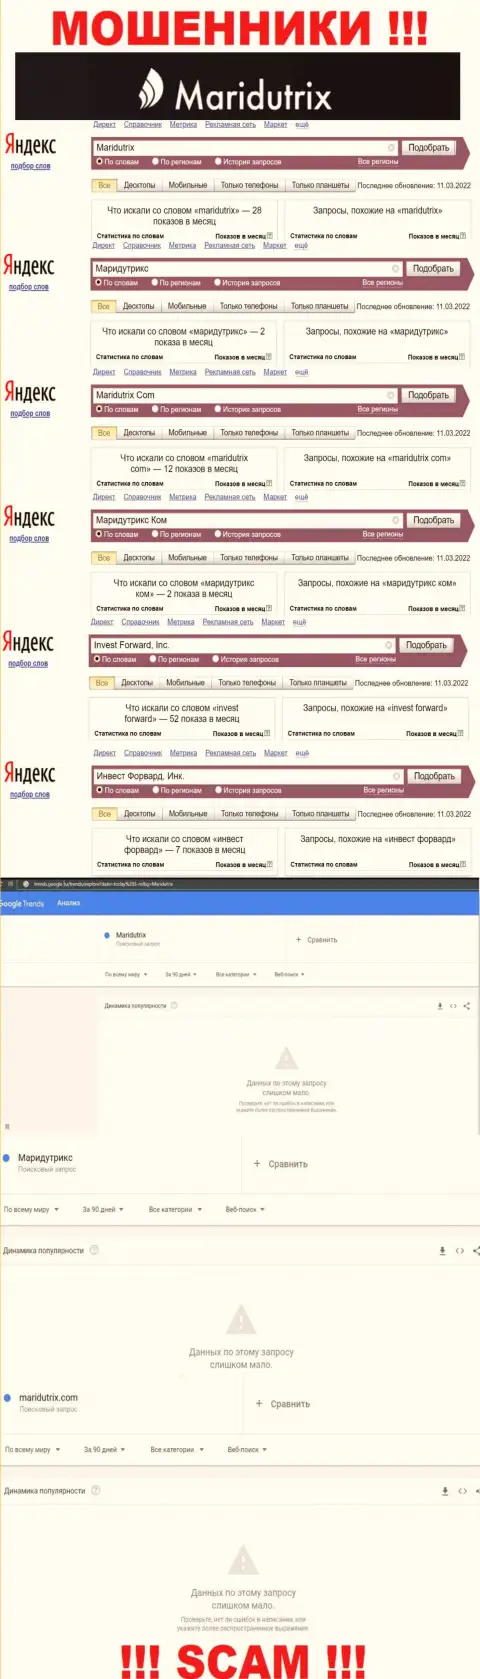 Статистические сведения online-запросов по бренду мошенников Инвест Форвард, Инк.